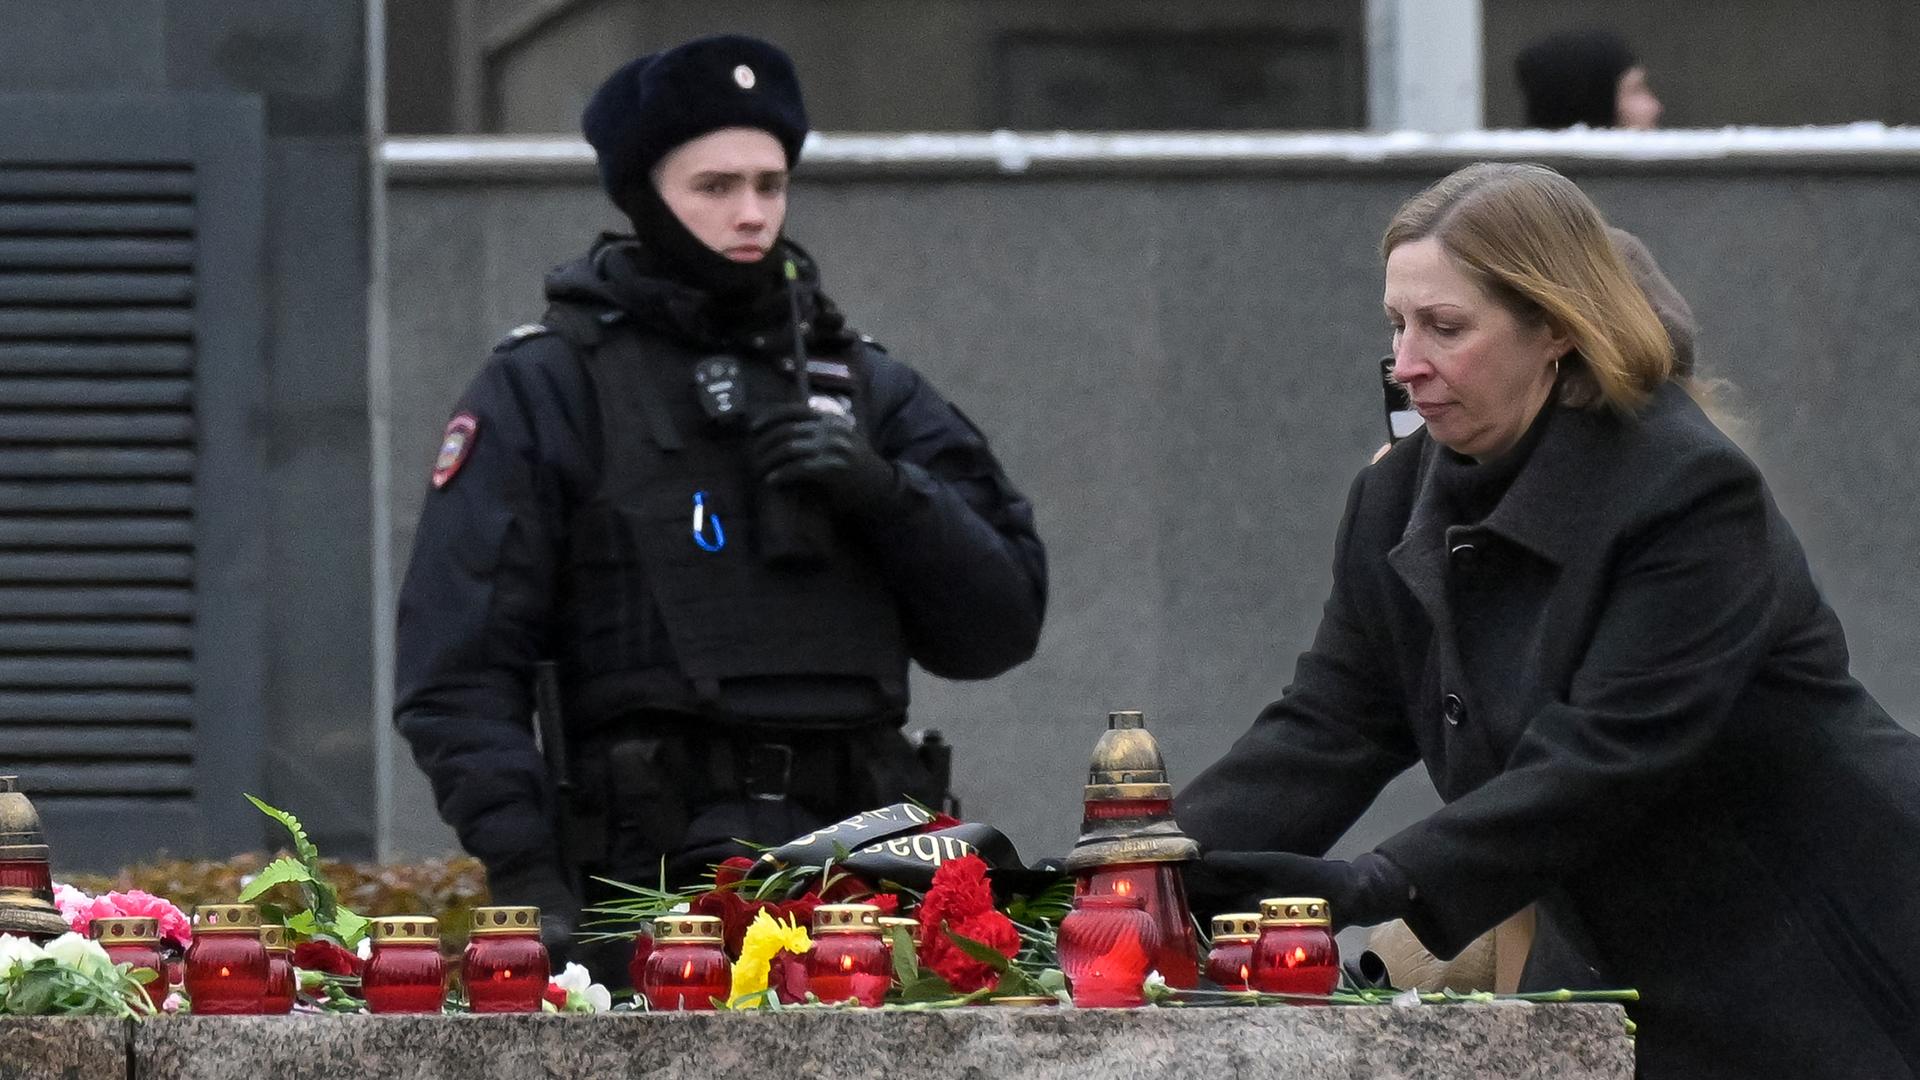 Gedenken an Stalin-Opfer in Russland: Ein Polizist bewacht einen Bereich, während Lynne Tracy, US-Botschafterin in Russland, Blumen niederlegt.